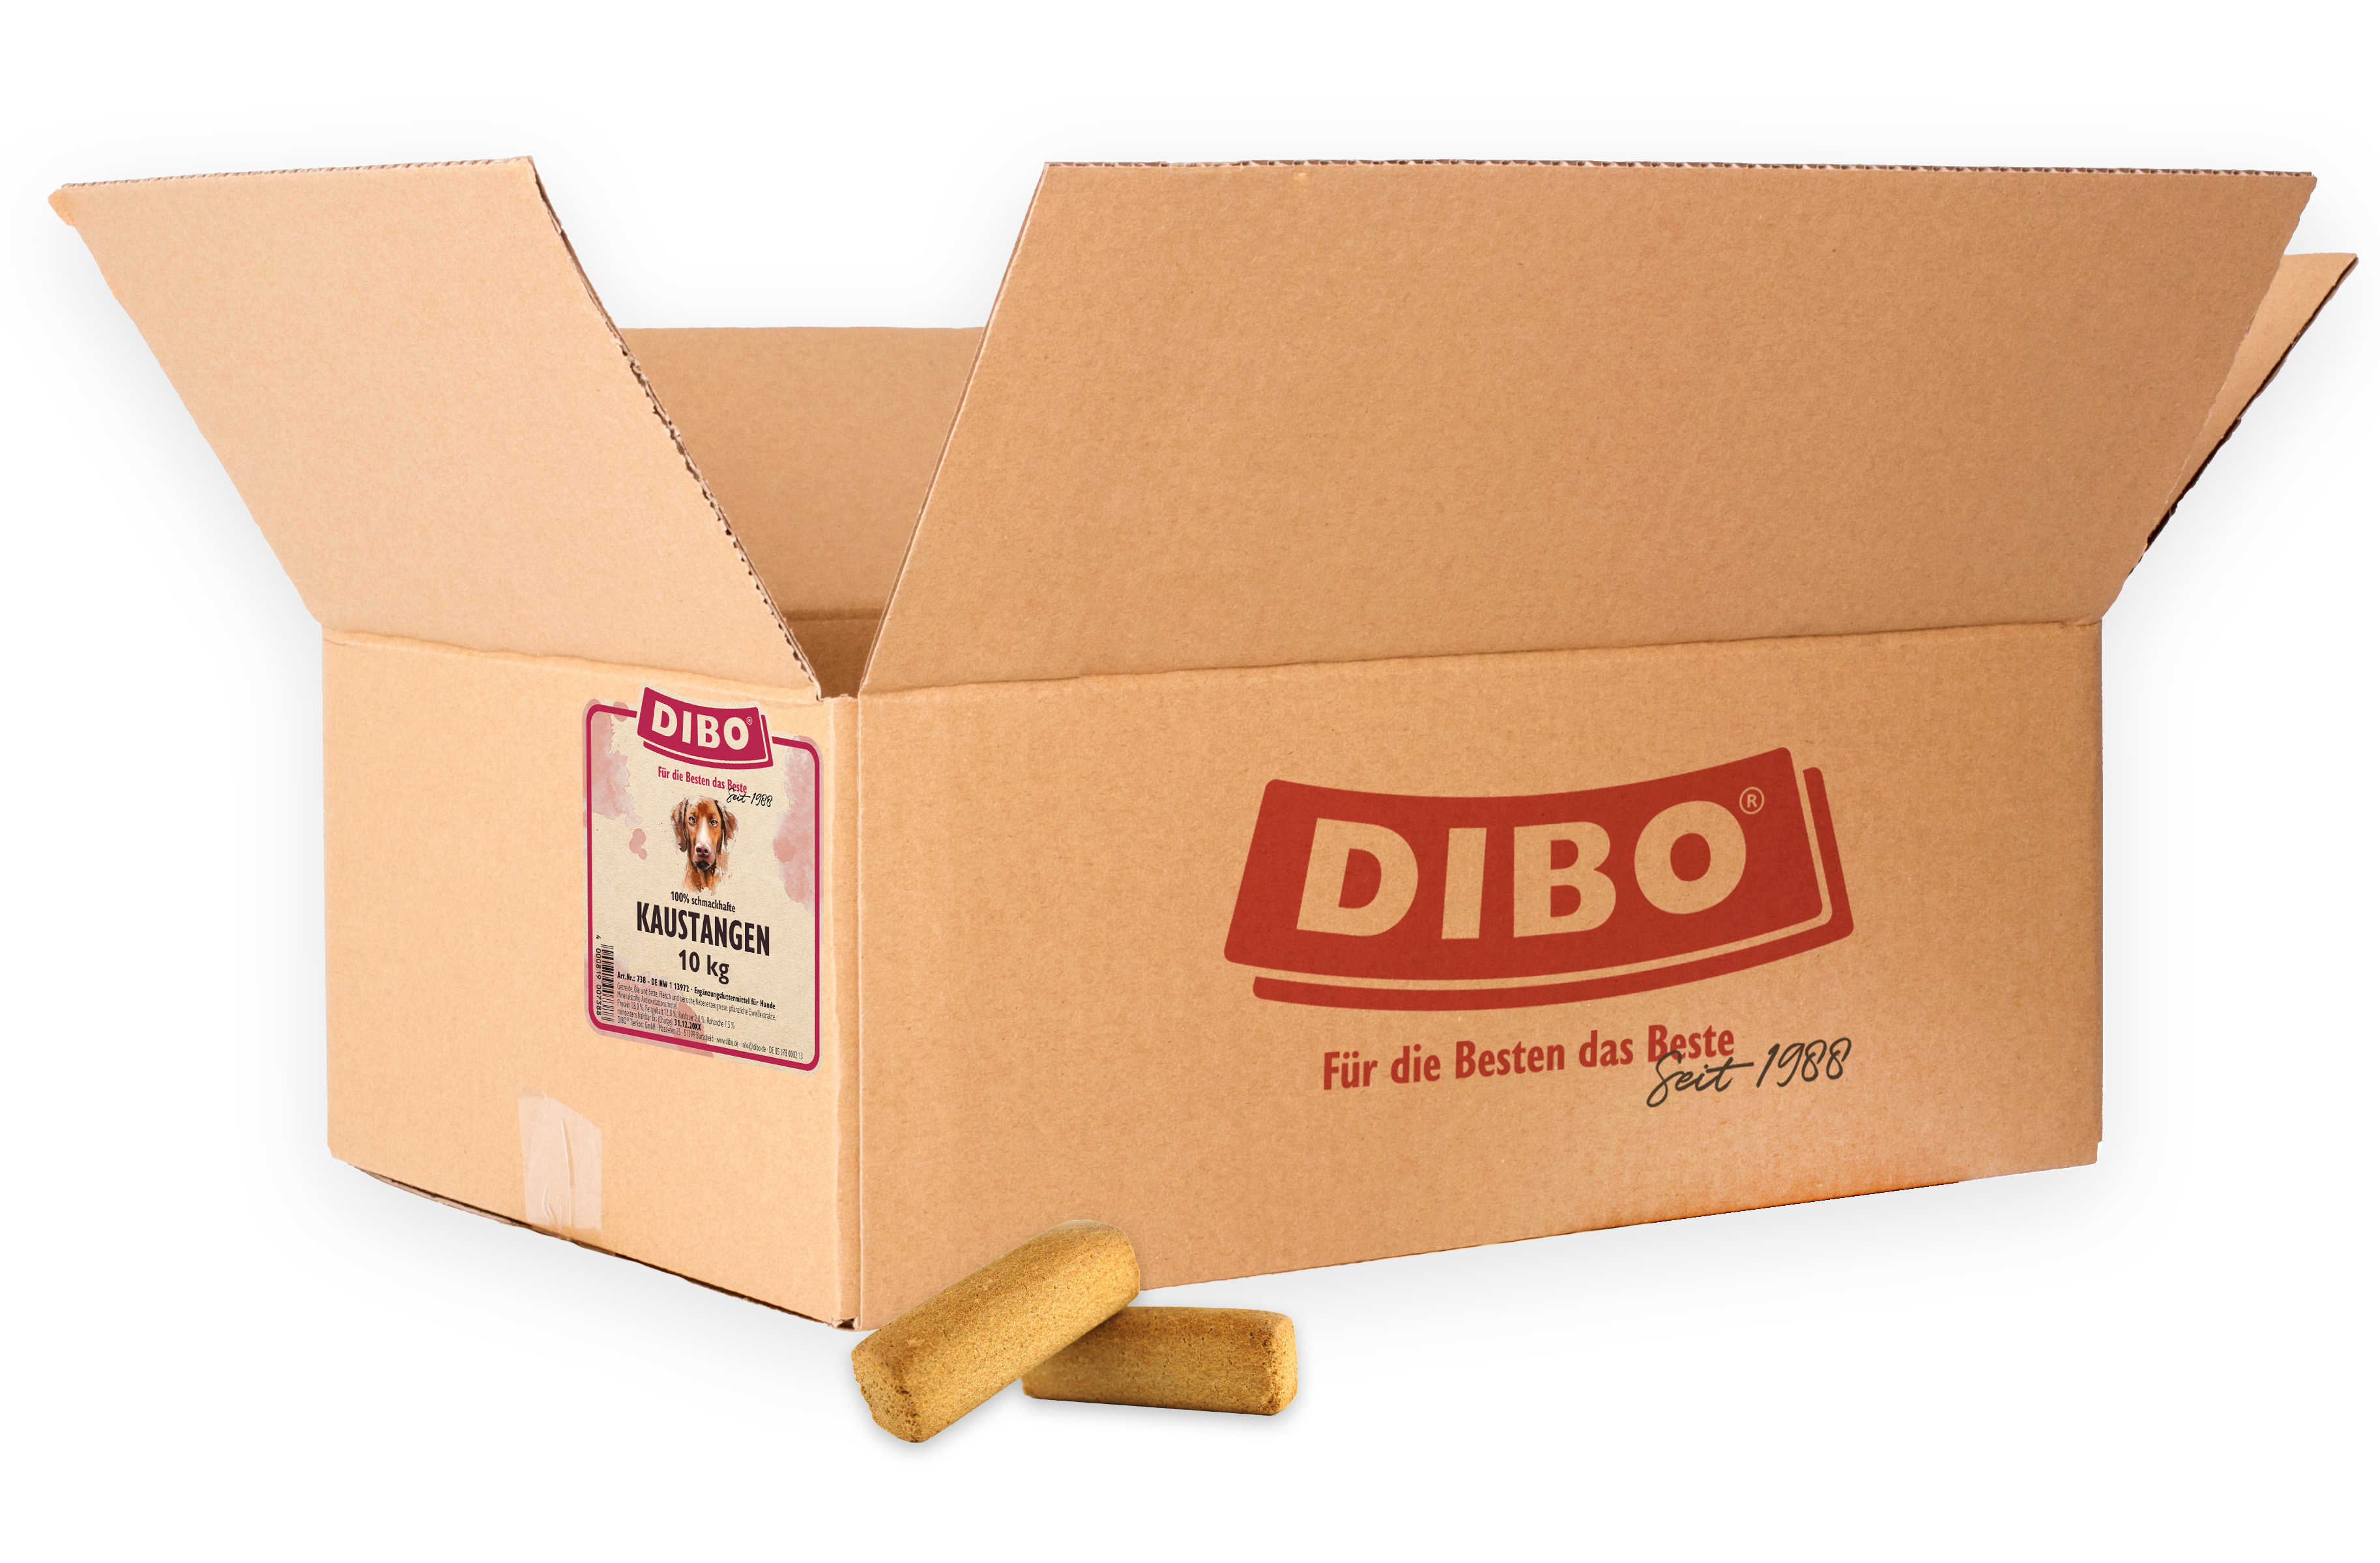 DIBO Kaustangen, 10kg-Karton